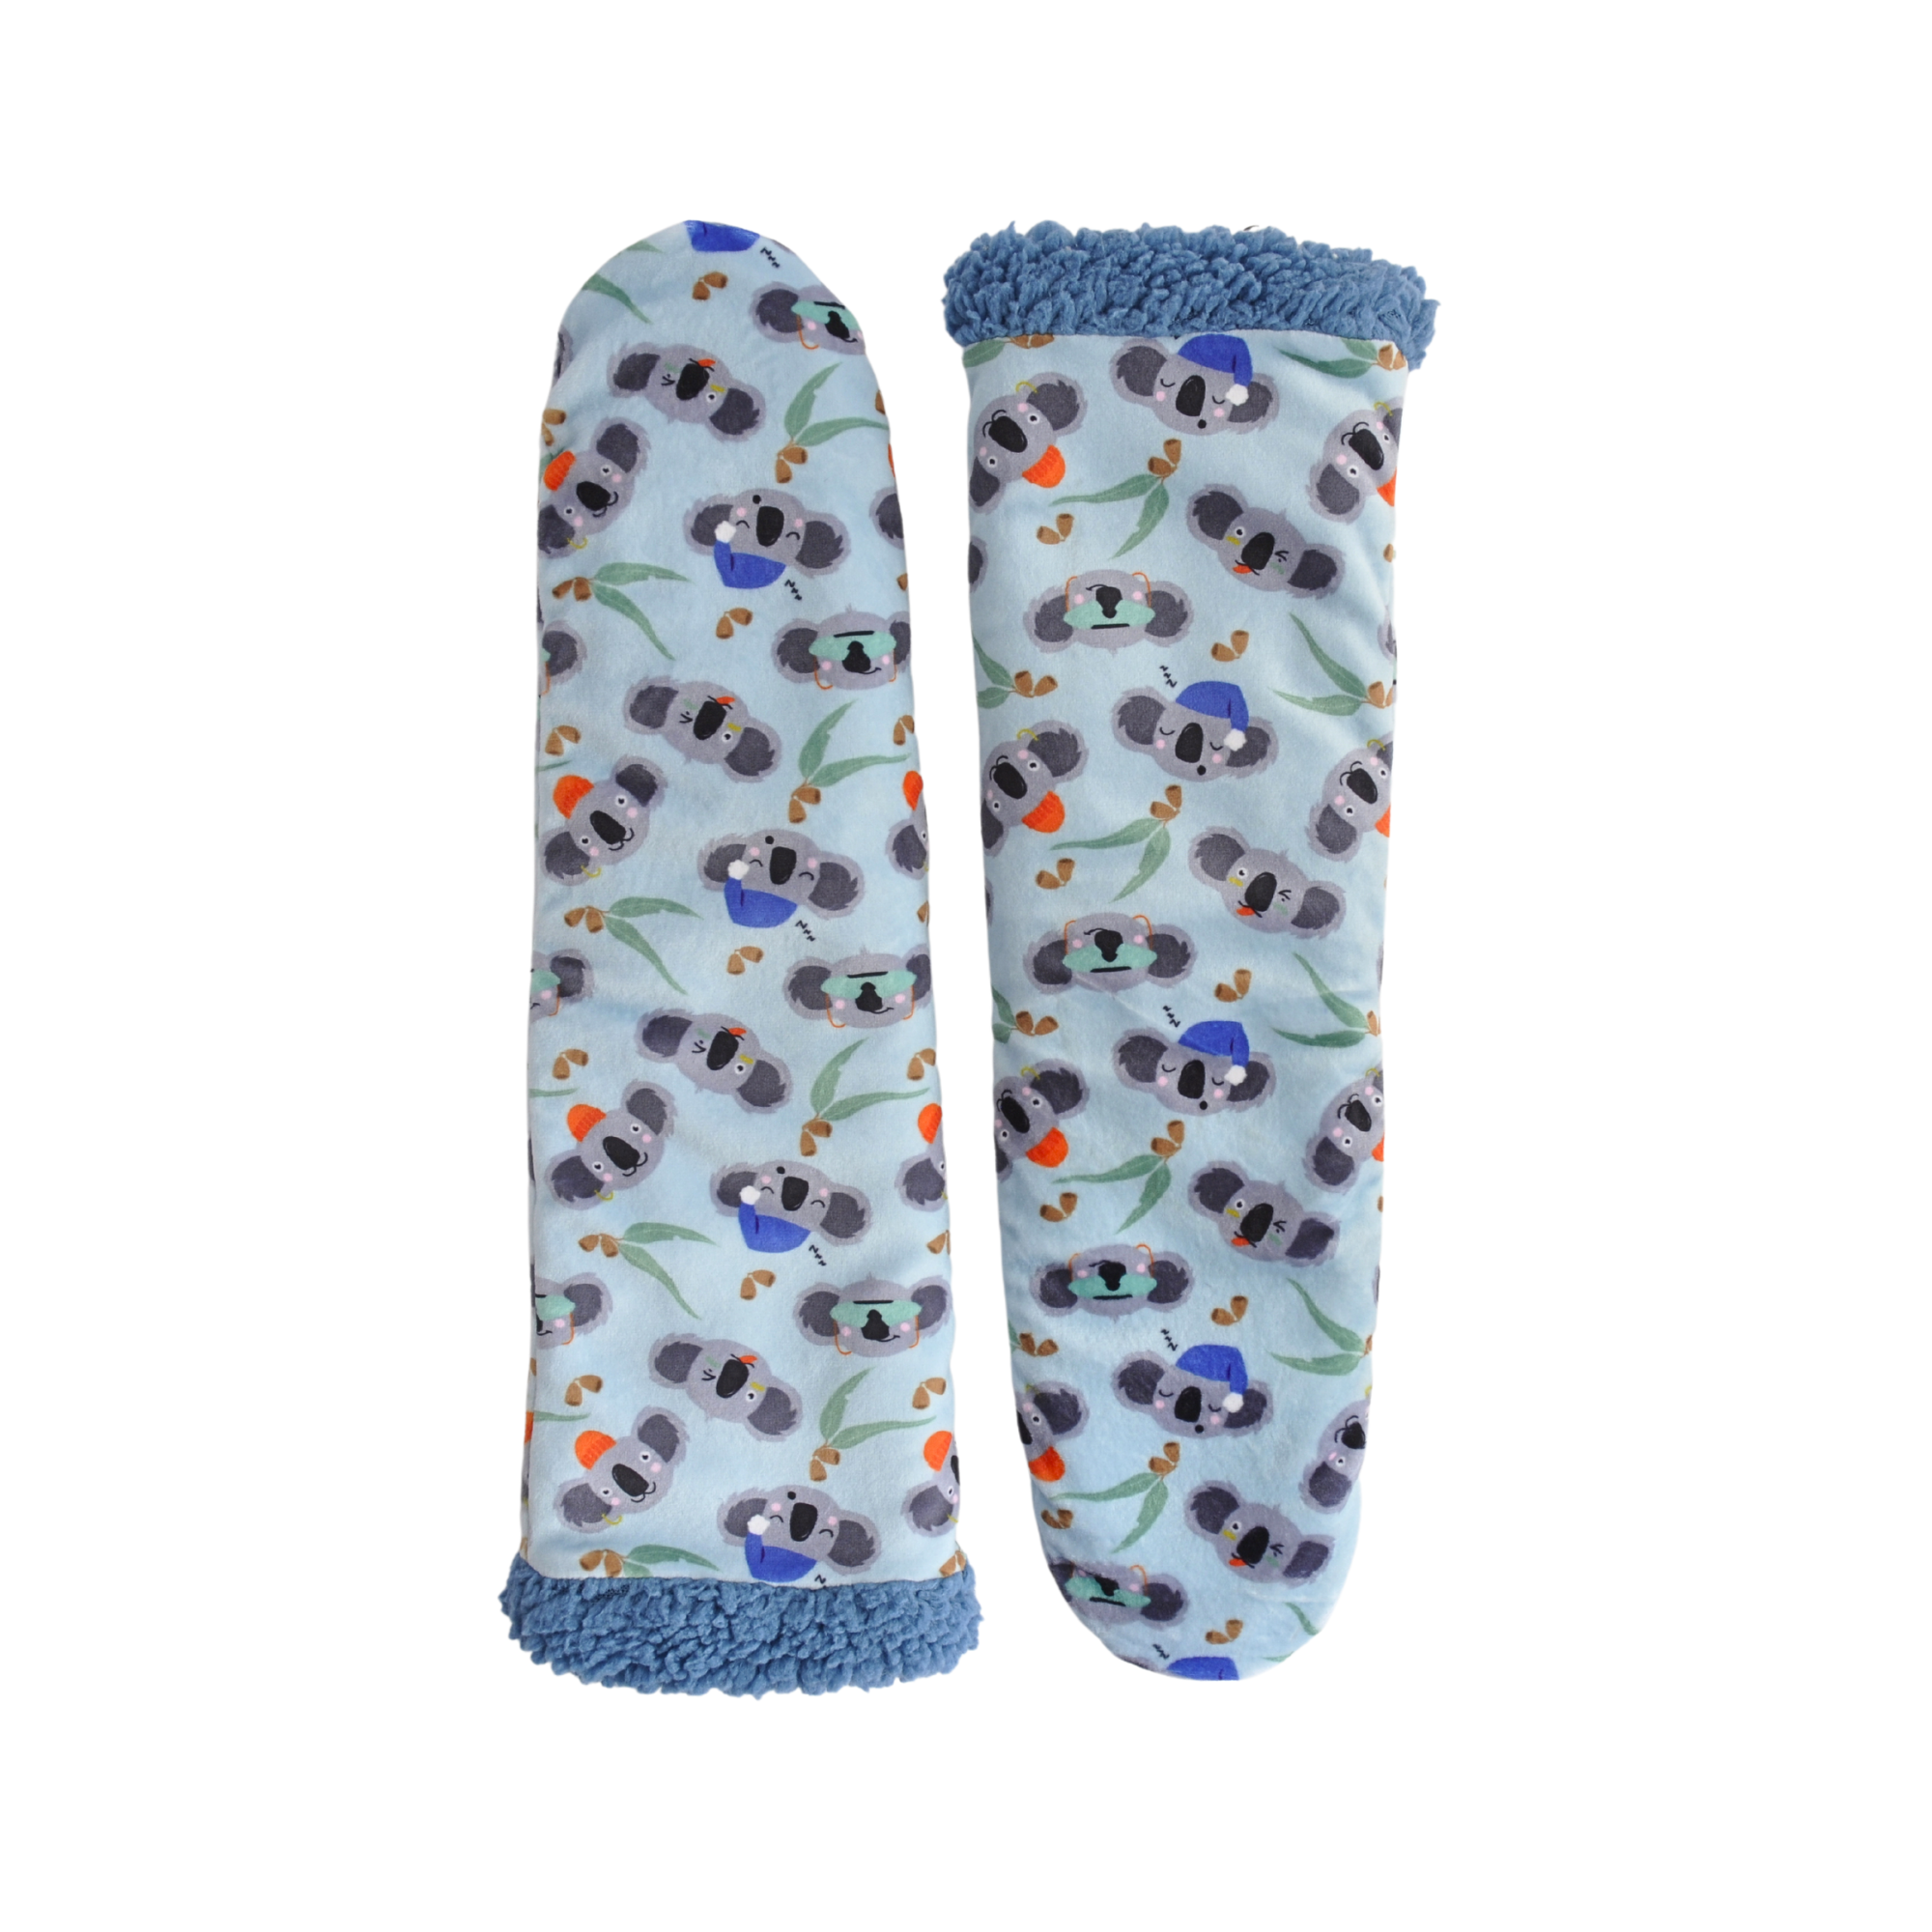 Slipper Socks - Crazy Koala Size Med 9-12